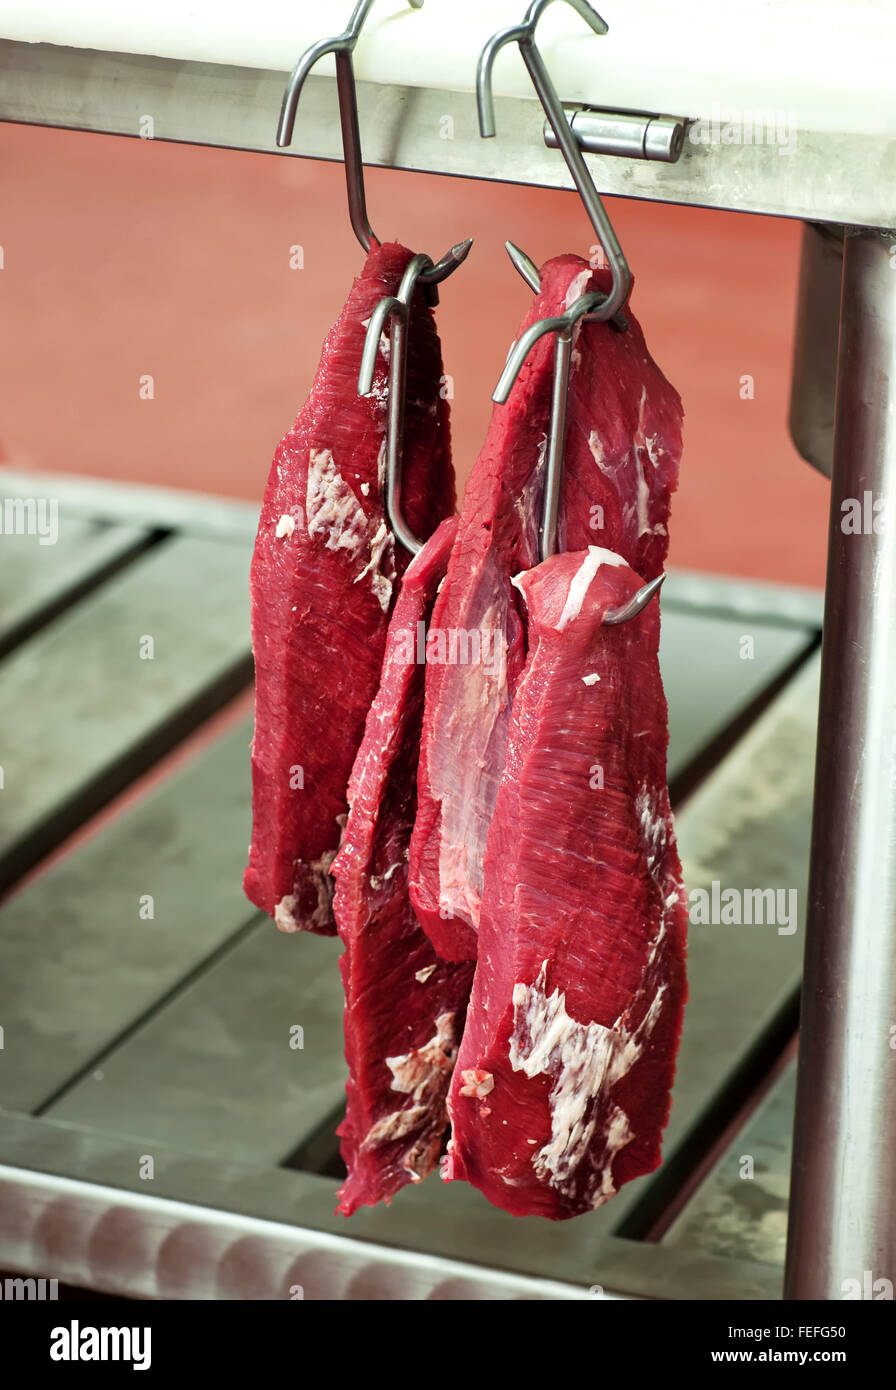 Lean getrimmt Rindfleisch Filet in einer Metzgerei am Fleischerhaken hängen Stockfoto